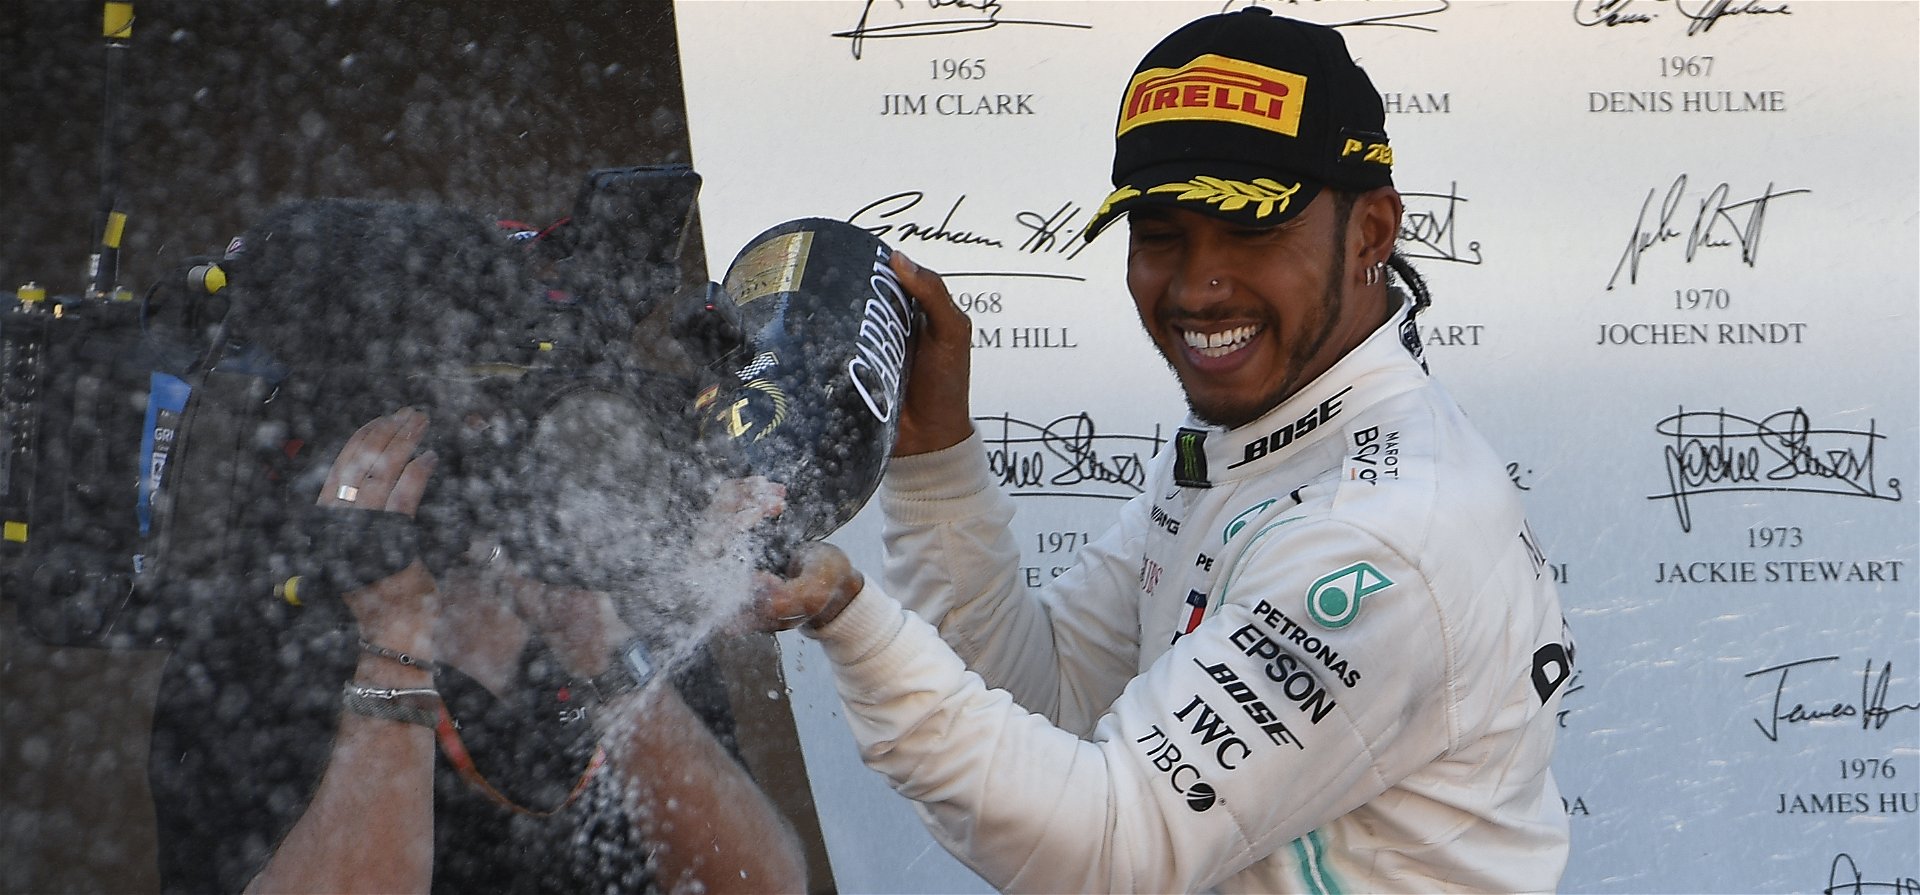 Hamilton-győzelem Mercedes-rekorddal